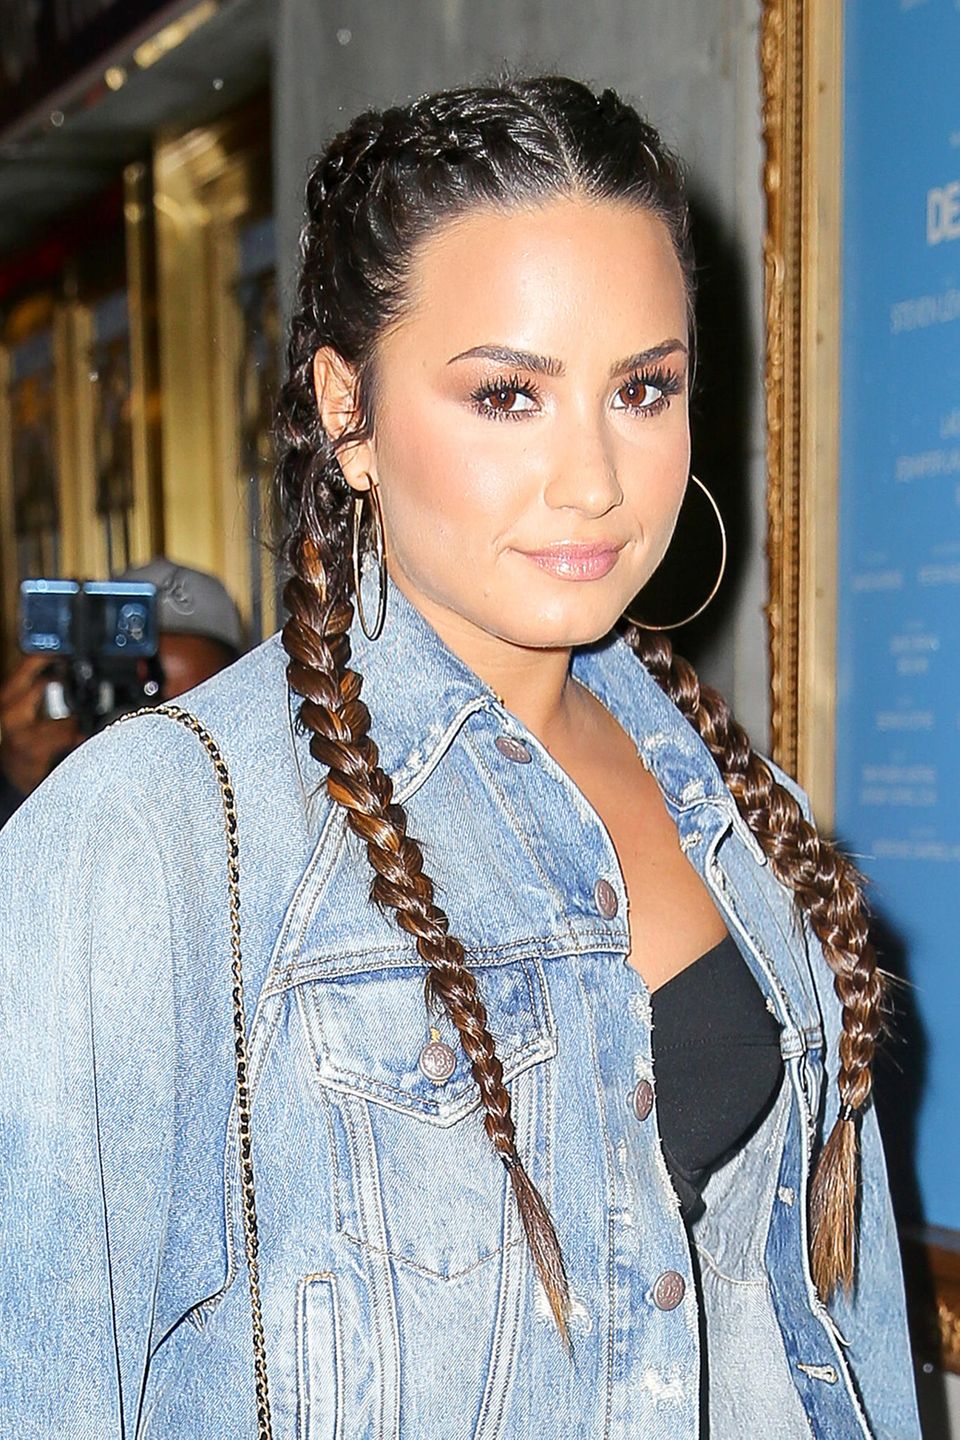 Aufwendig, aber eindrucksvoll! Boxer-Braids sind für Langhaarige wie Demi Lovato eine tolle Styling-Variante.